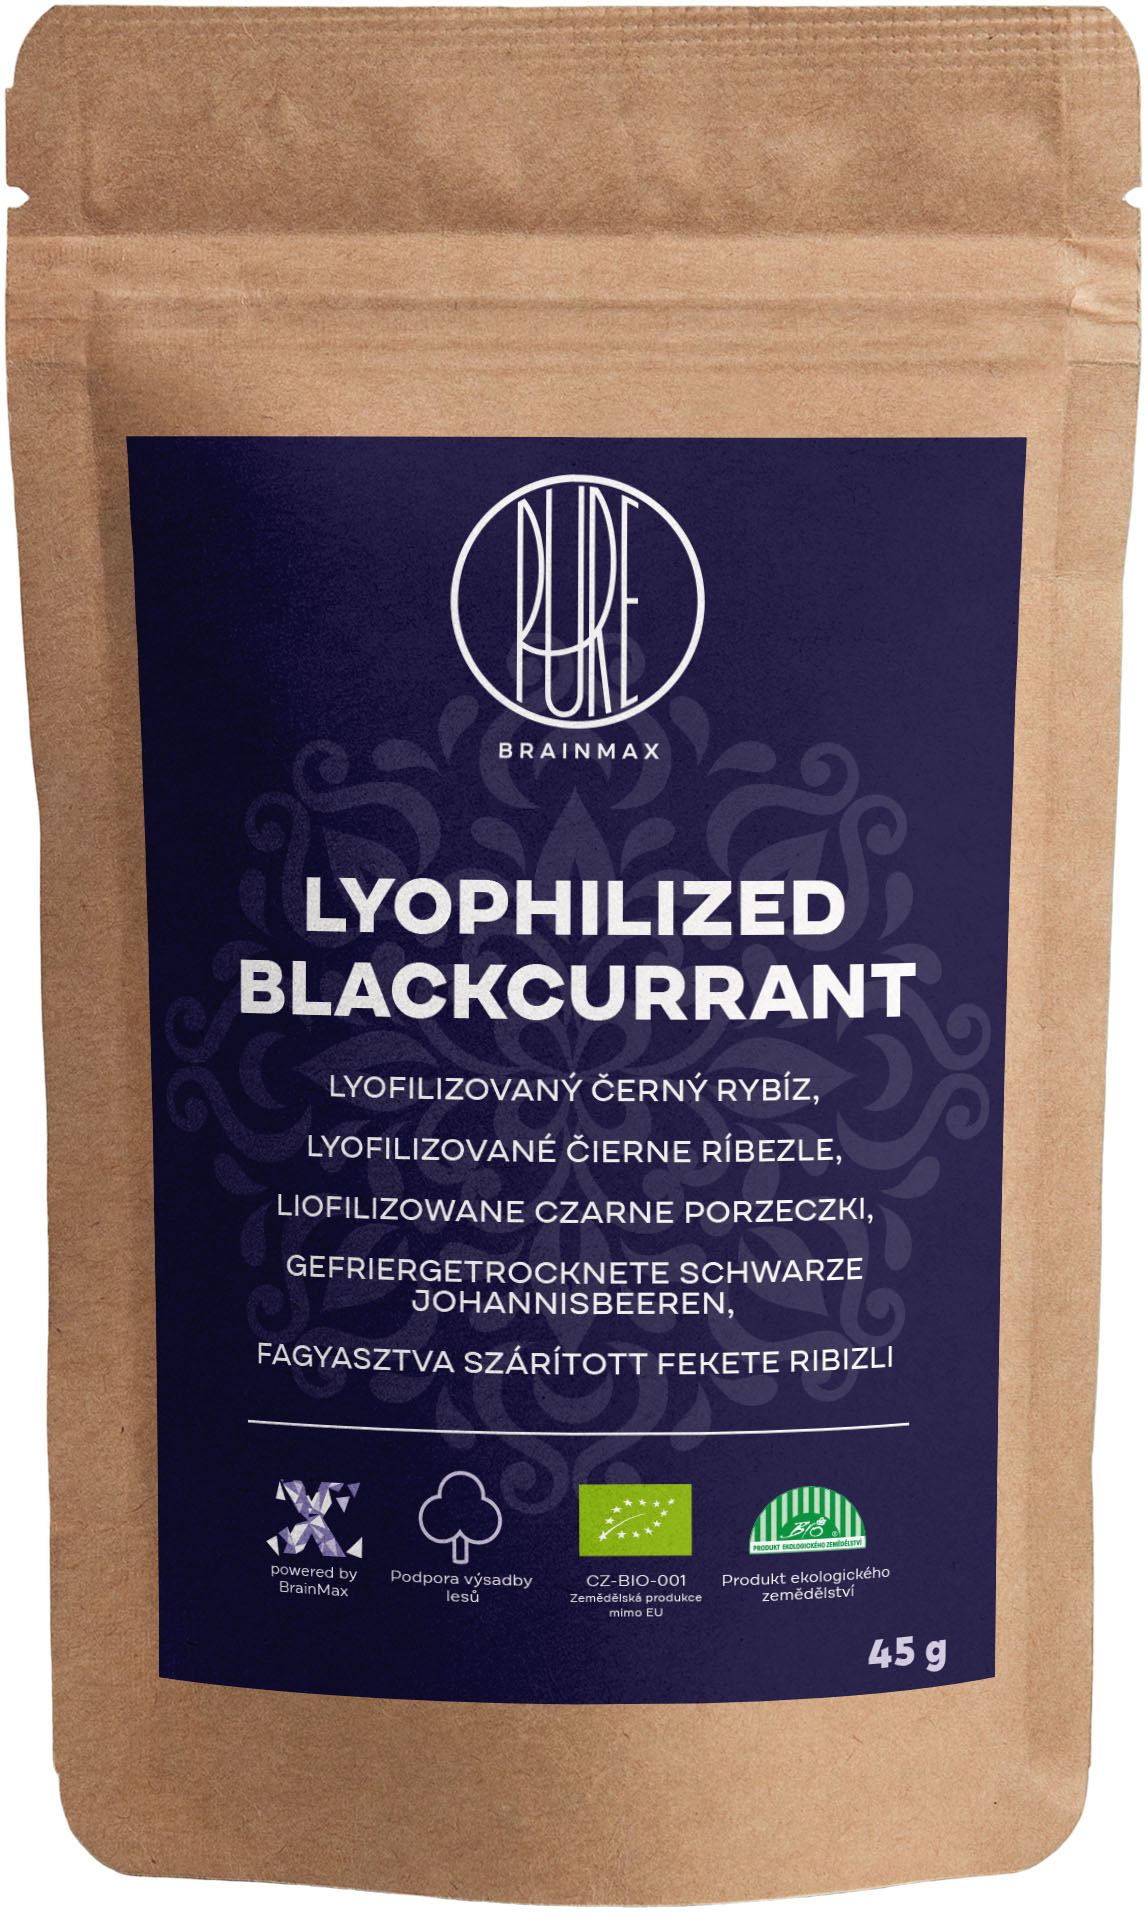 Levně BrainMax Pure Lyophilized Blackcurrant, Lyofilizovaný černý rybíz, BIO, 45 g *CZ-BIO-001 certifikát